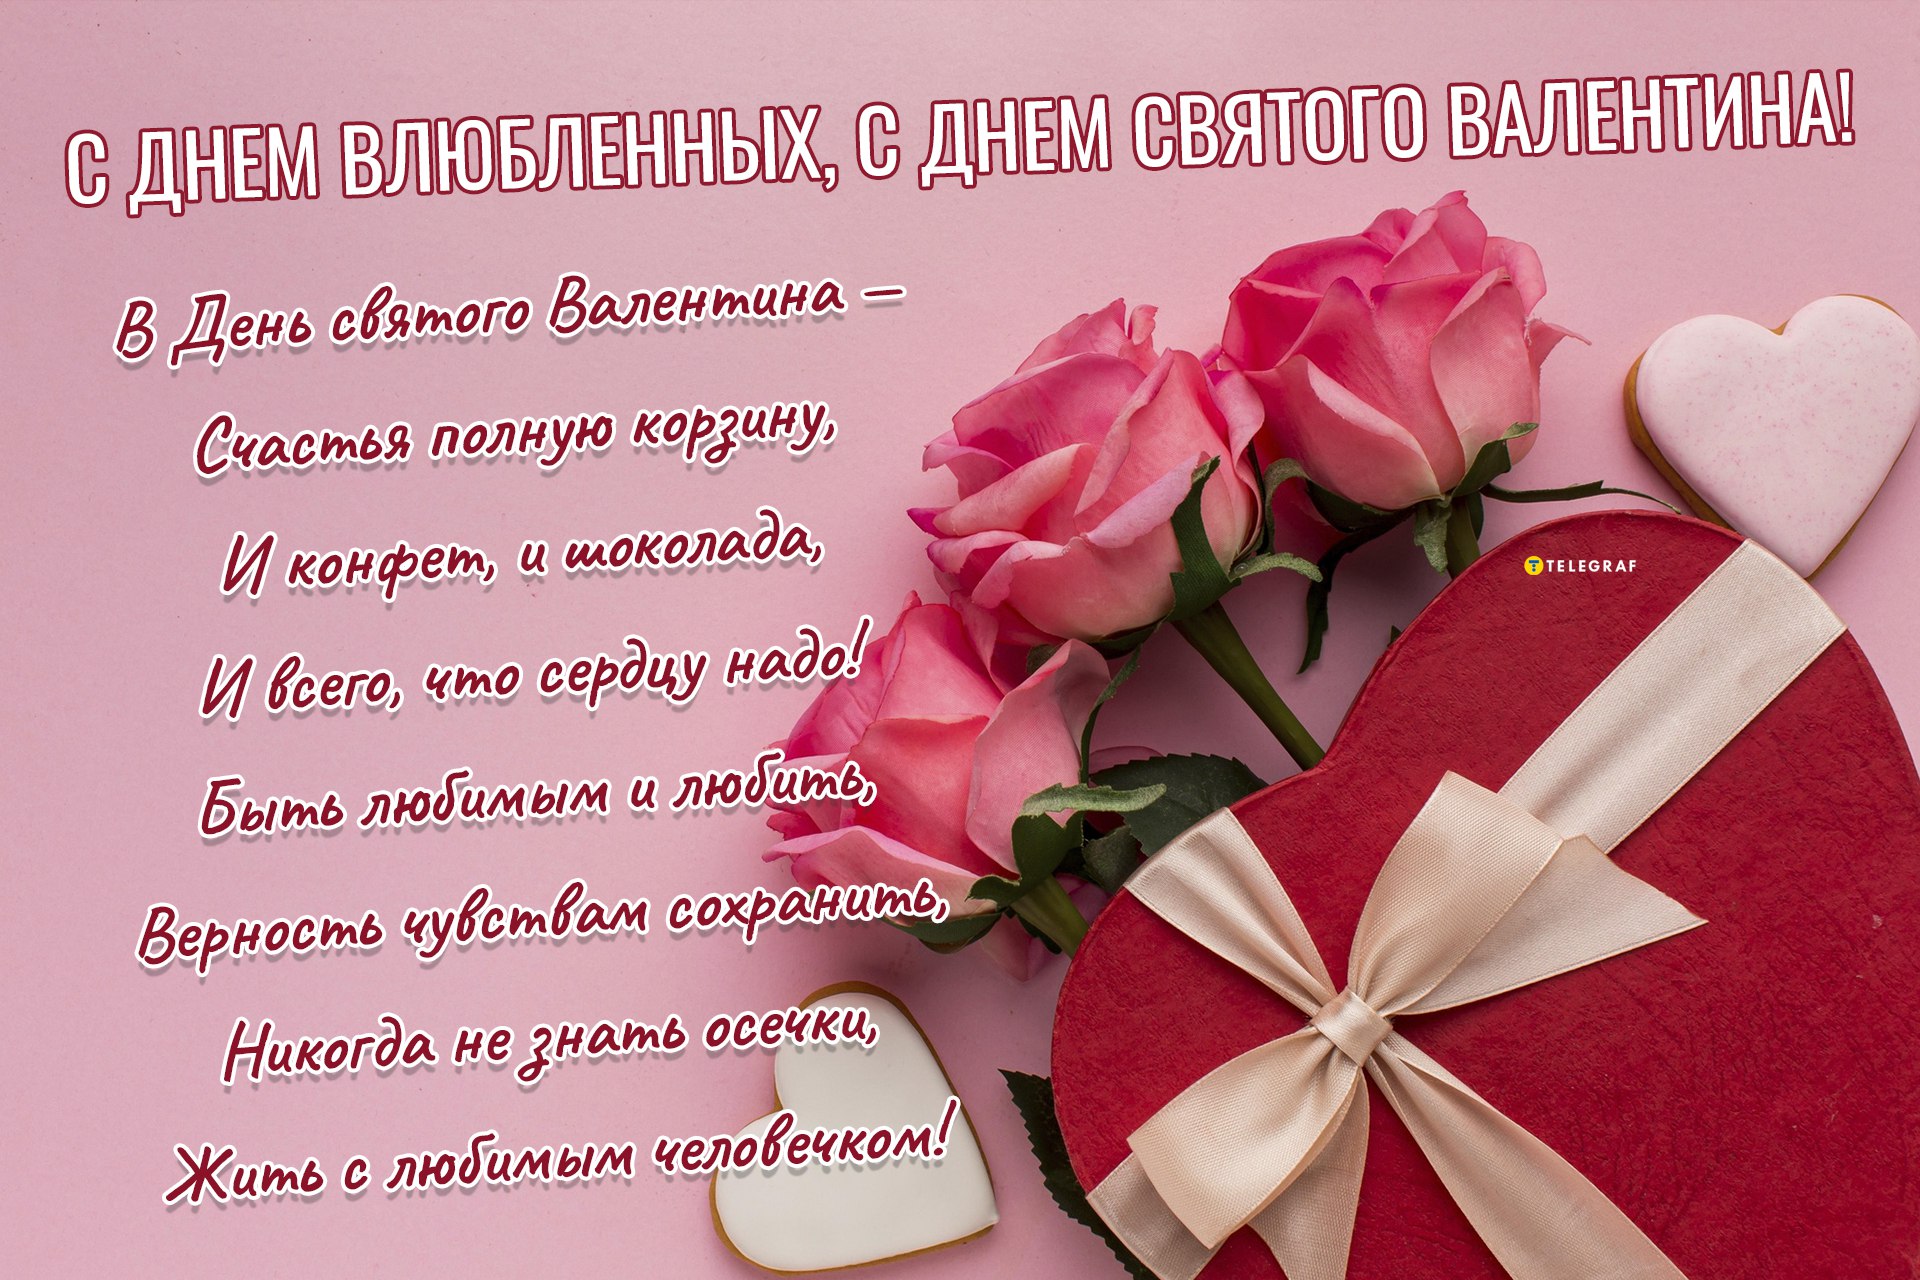 Традиции 14 февраля: как принято отмечать День святого Валентина в разных странах